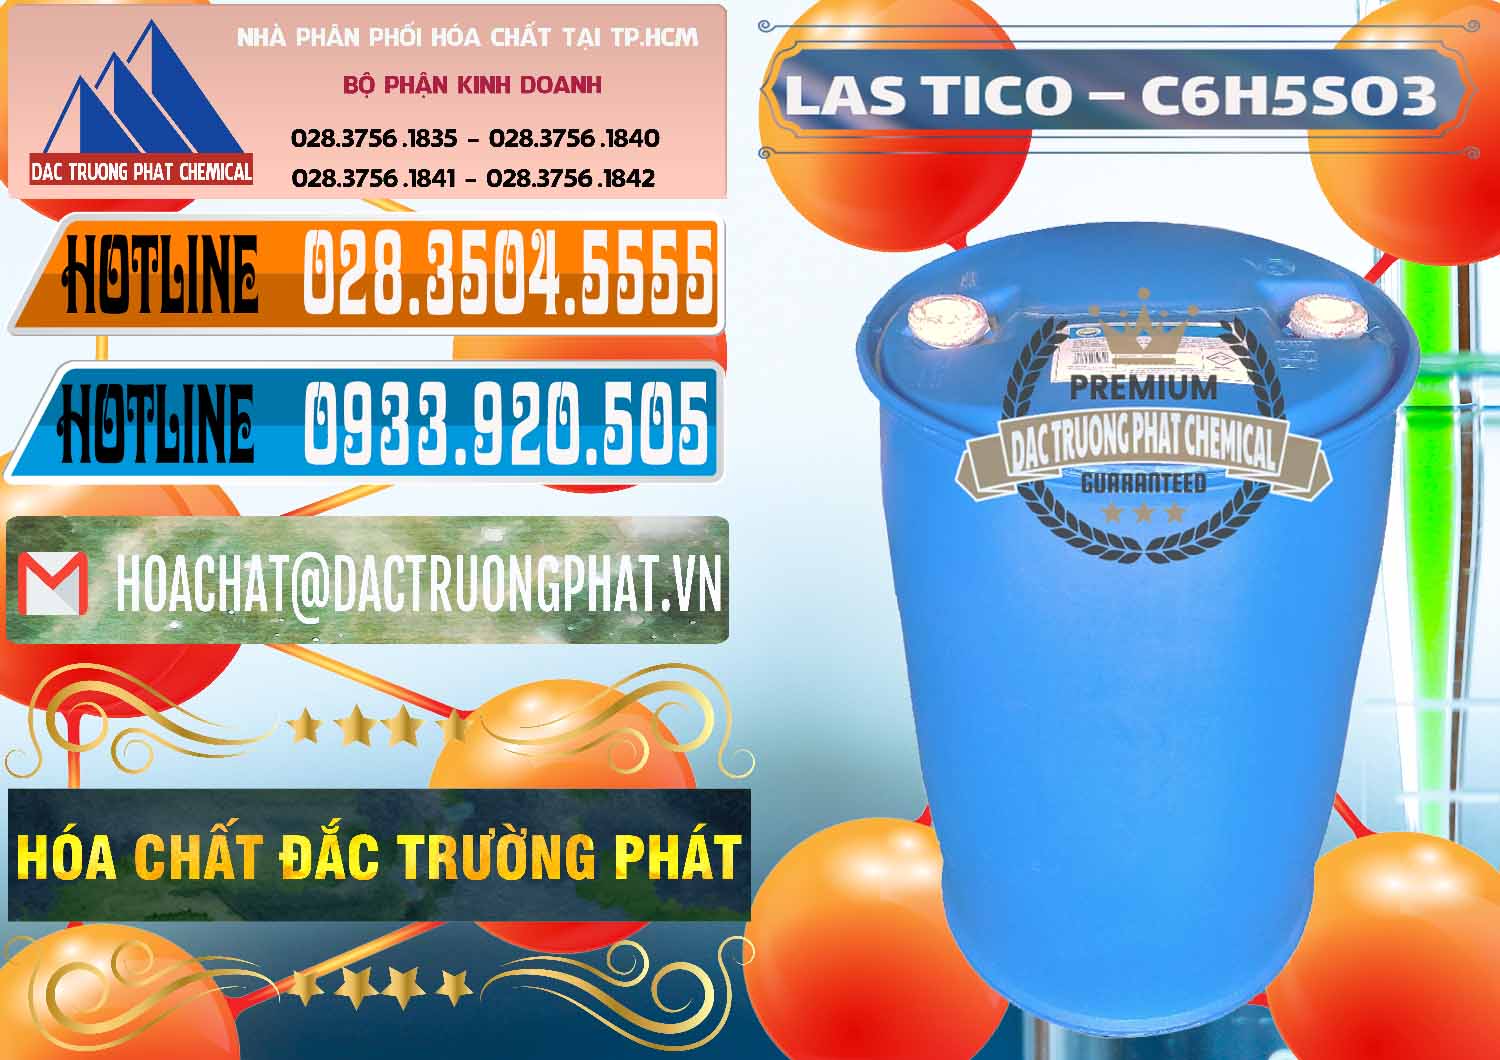 Nơi chuyên bán ( cung cấp ) Chất tạo bọt Las H Tico Việt Nam - 0190 - Đơn vị kinh doanh ( bán ) hóa chất tại TP.HCM - stmp.net